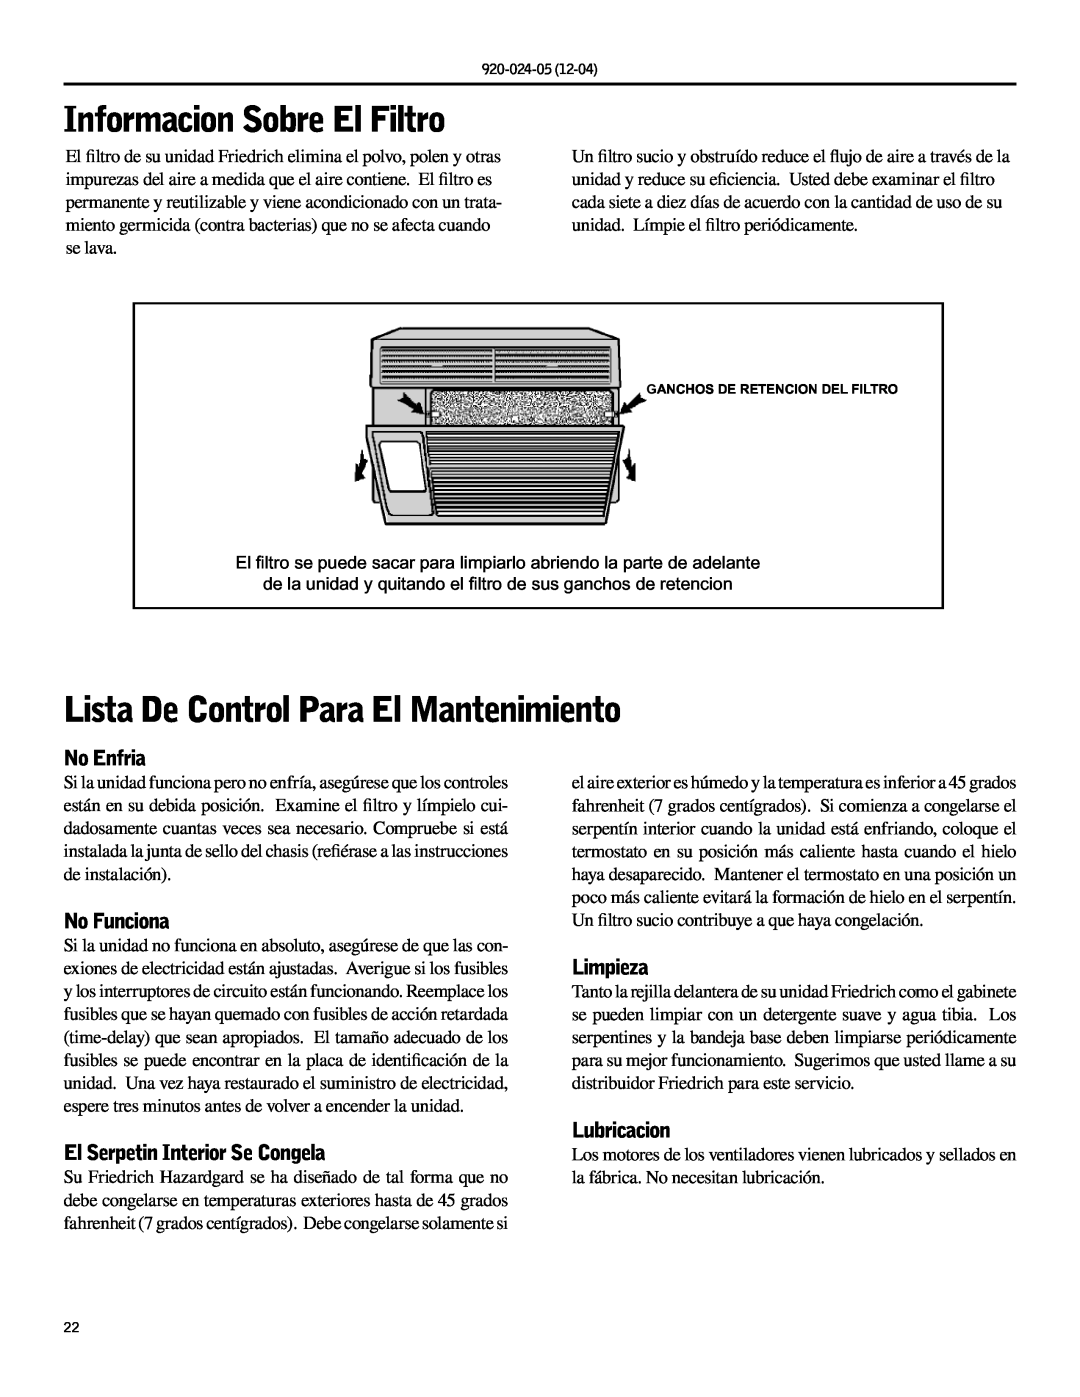 Friedrich SH15, SH20 Informacion Sobre El Filtro, Lista De Control Para El Mantenimiento, No Enfria, No Funciona, Limpieza 